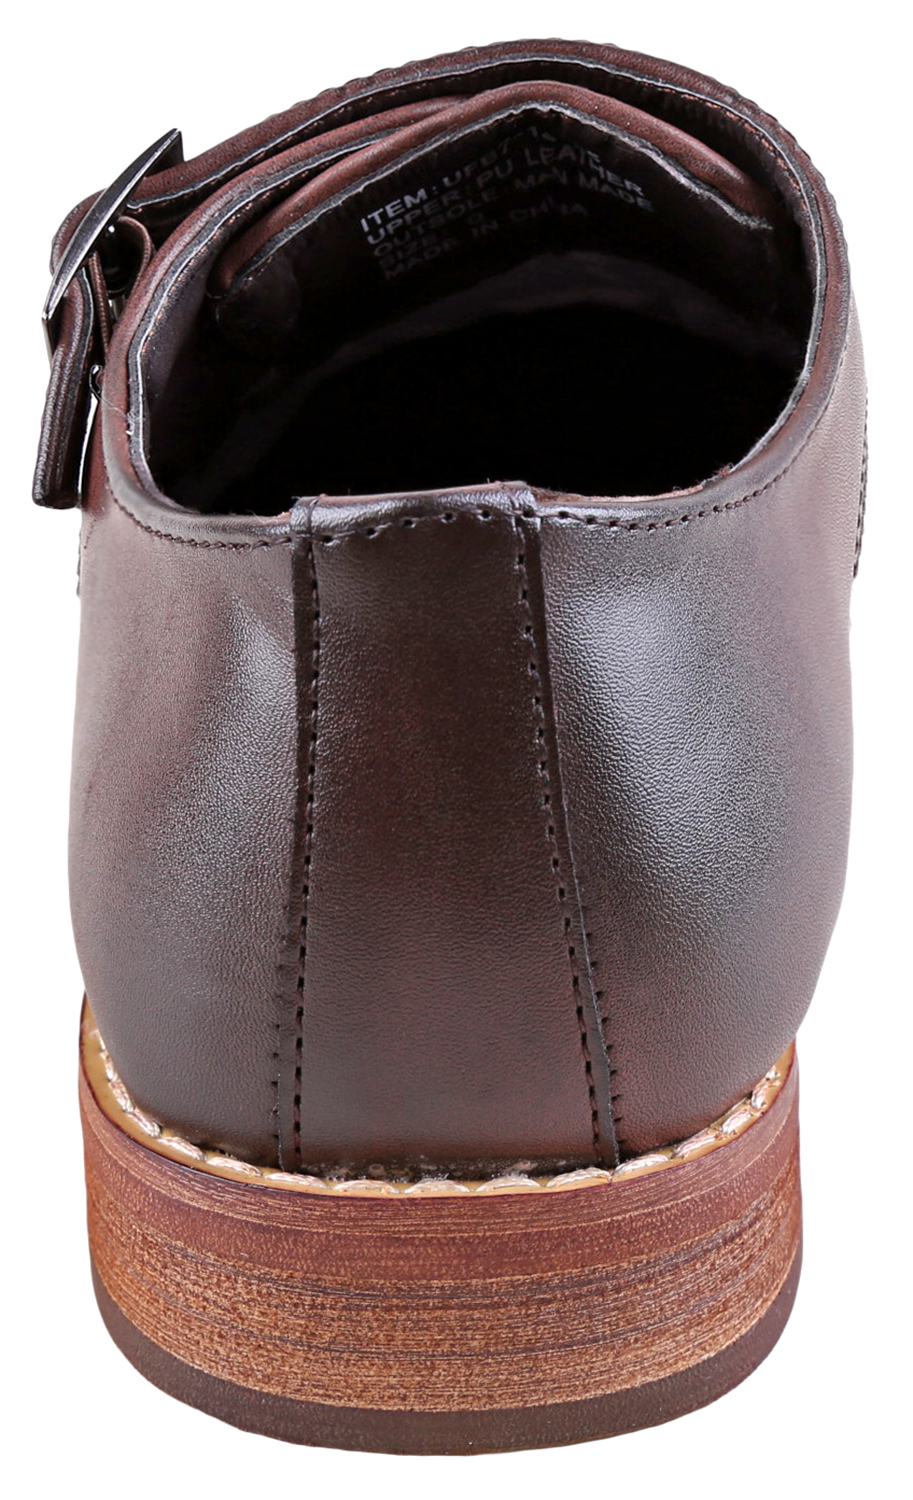 Urban Fox Allen Men's Dress Shoe | Double Monk Strap | Brogue | Wingtip Shoes for Men | Dark Brown 14 M US - image 4 of 7